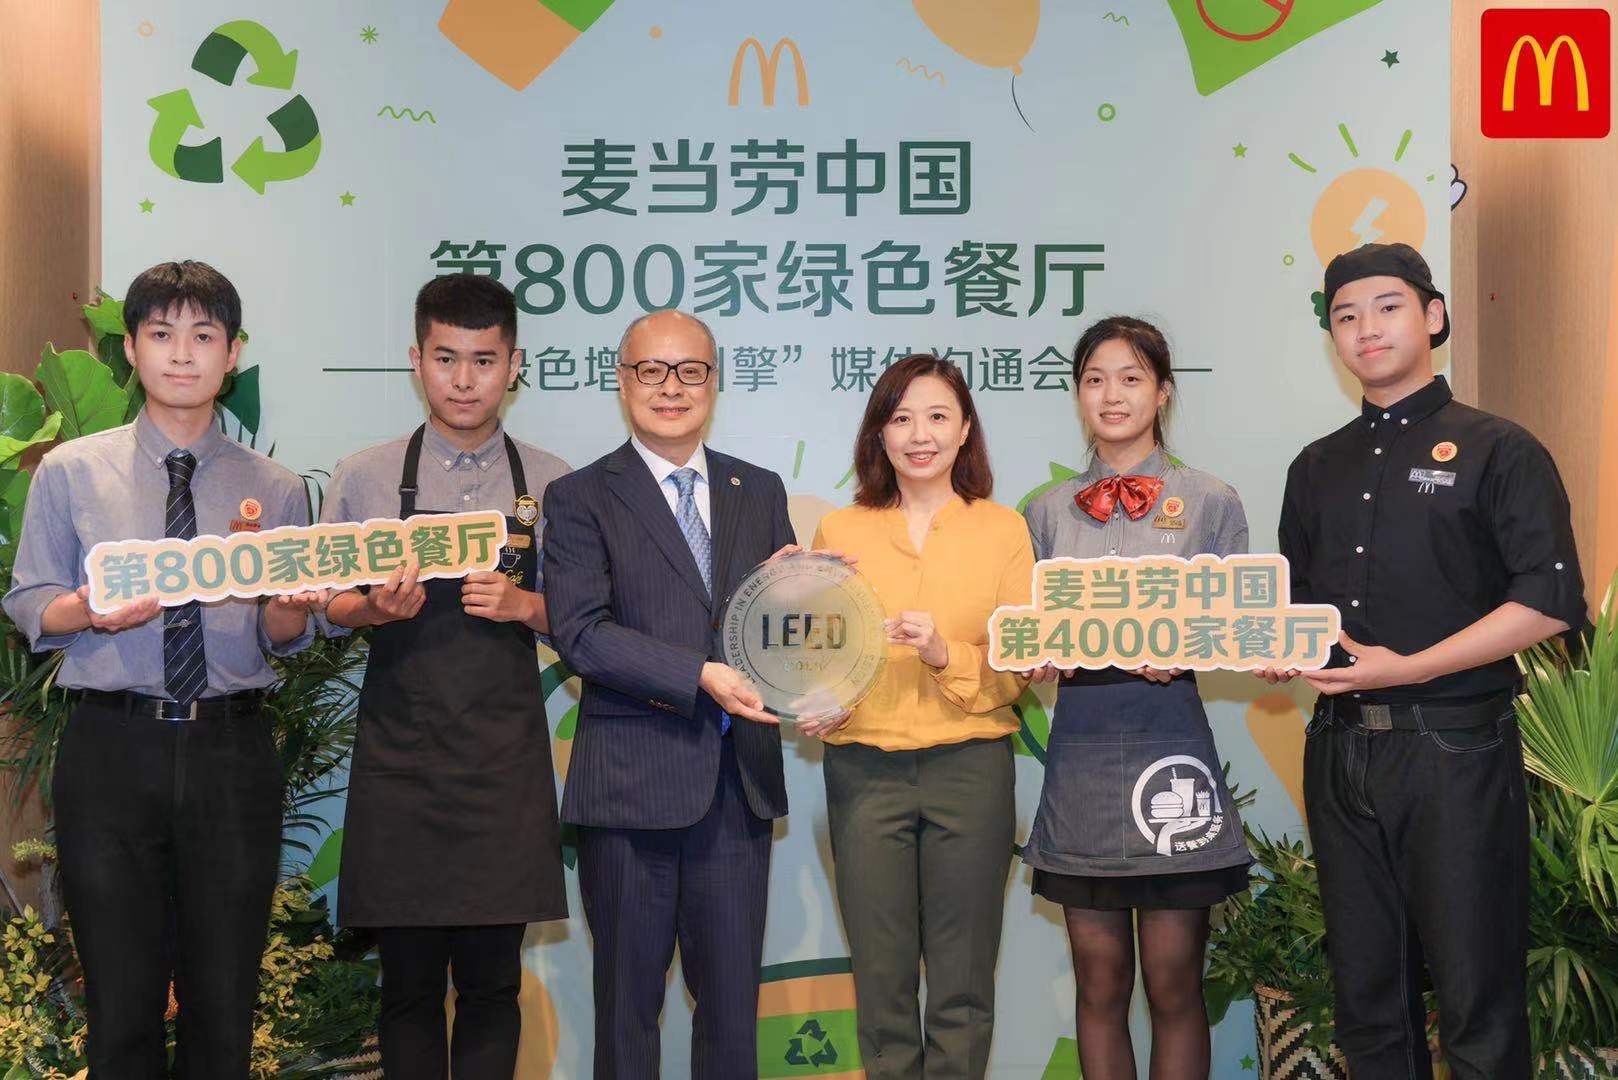 麦当劳中国“绿色增长引擎”全开，LEED认证餐厅达800家